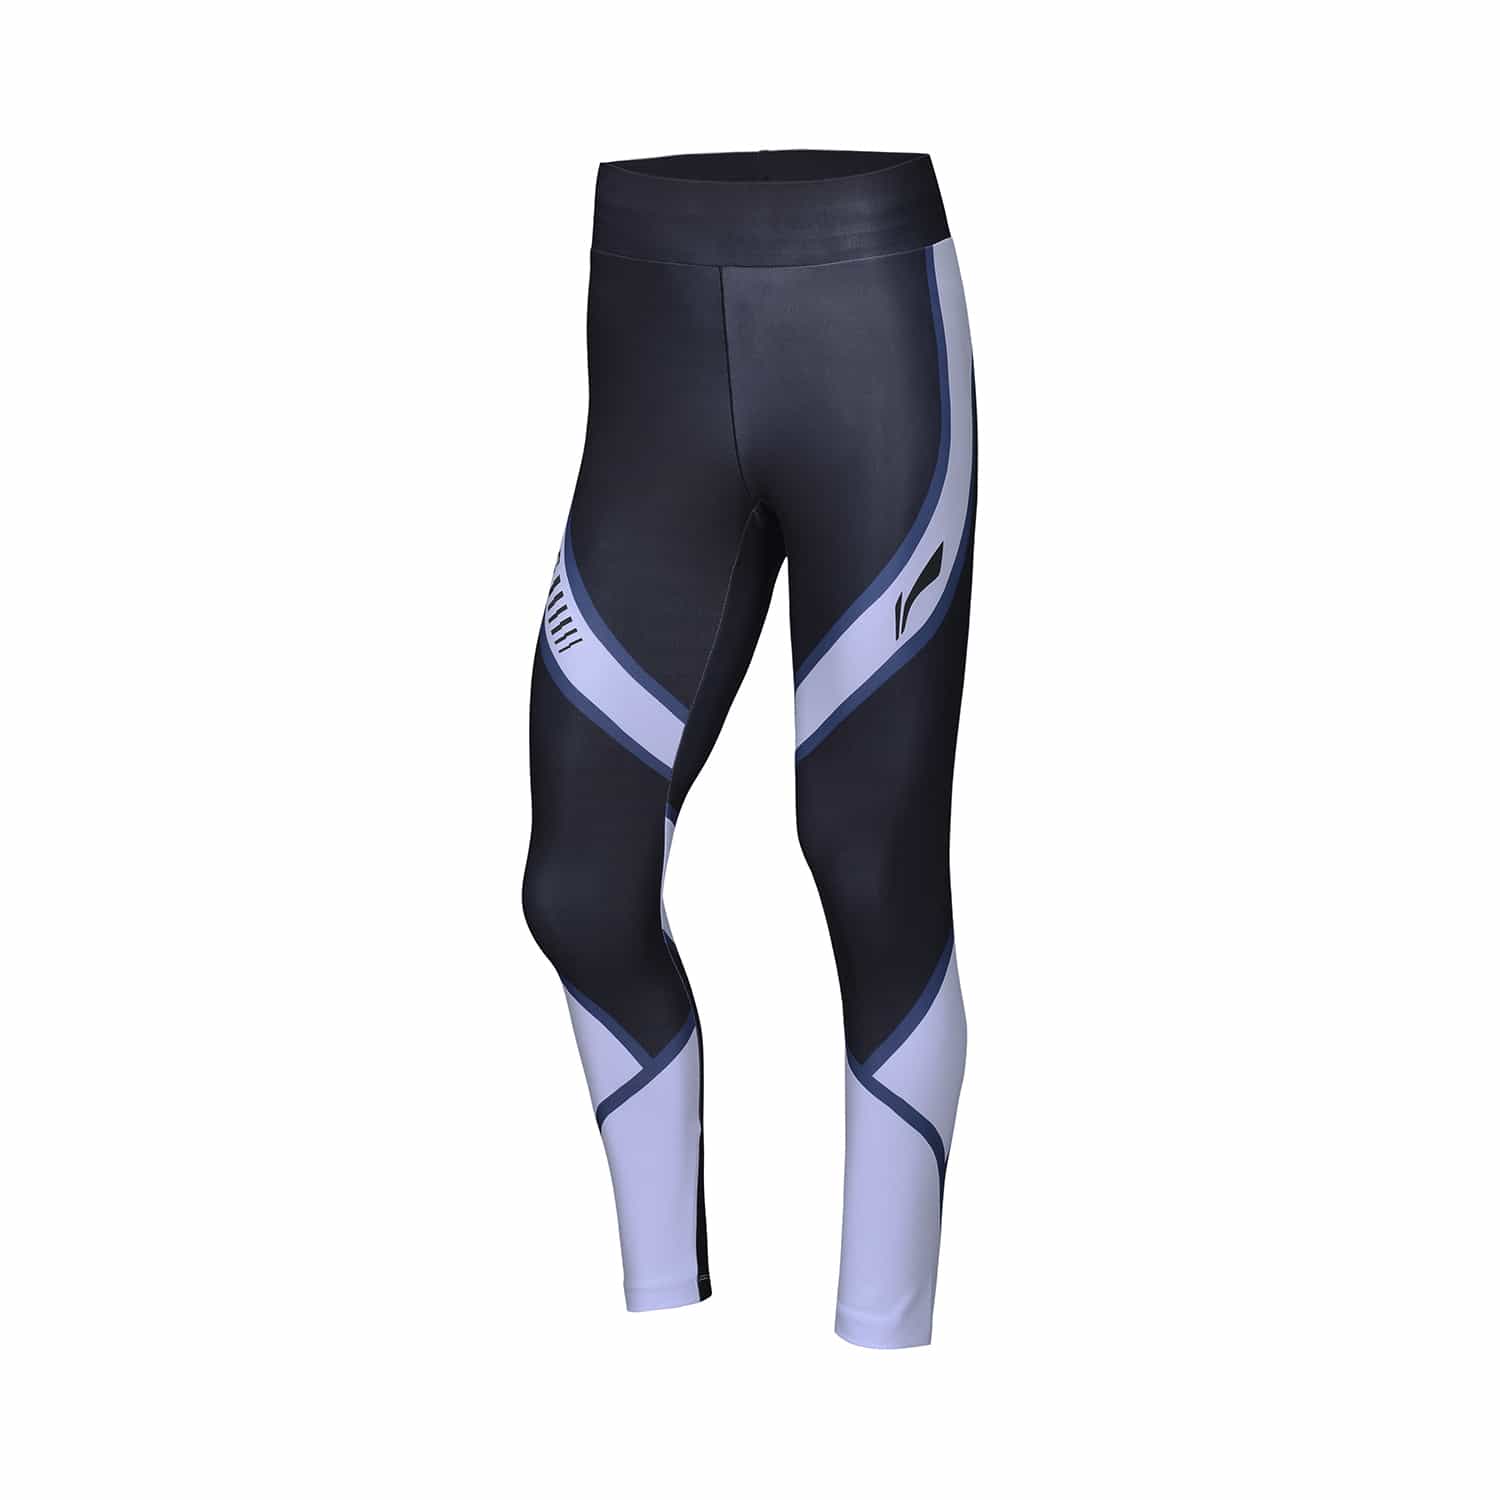 跑步系列女子緊身運動長褲 - 紫標準黑